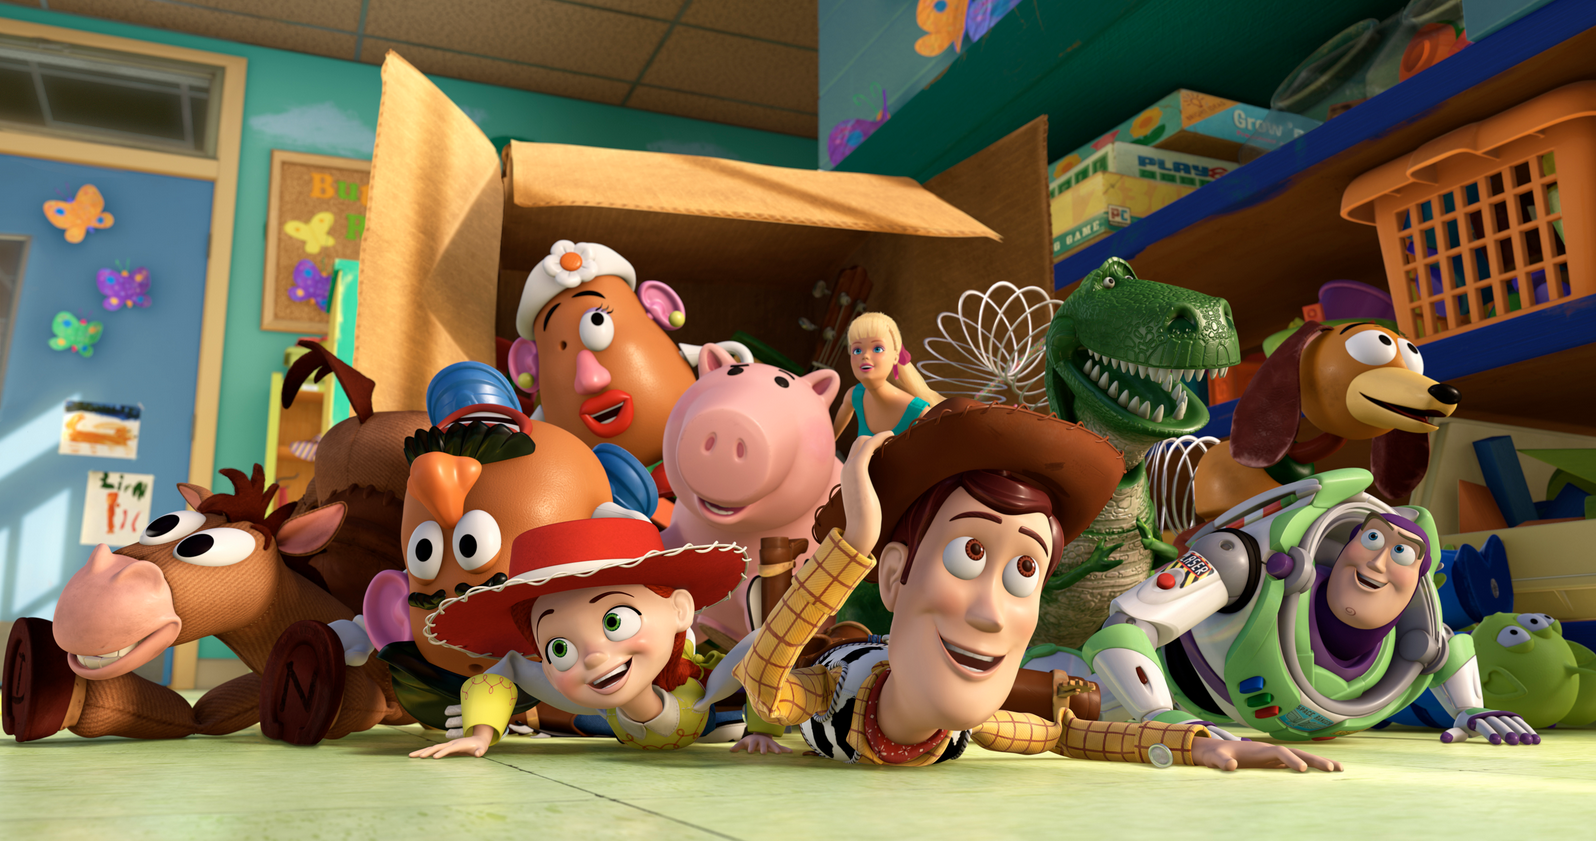 capture decran 2015 09 23 a 21 21 20 - La saga Toy Story sur Netflix